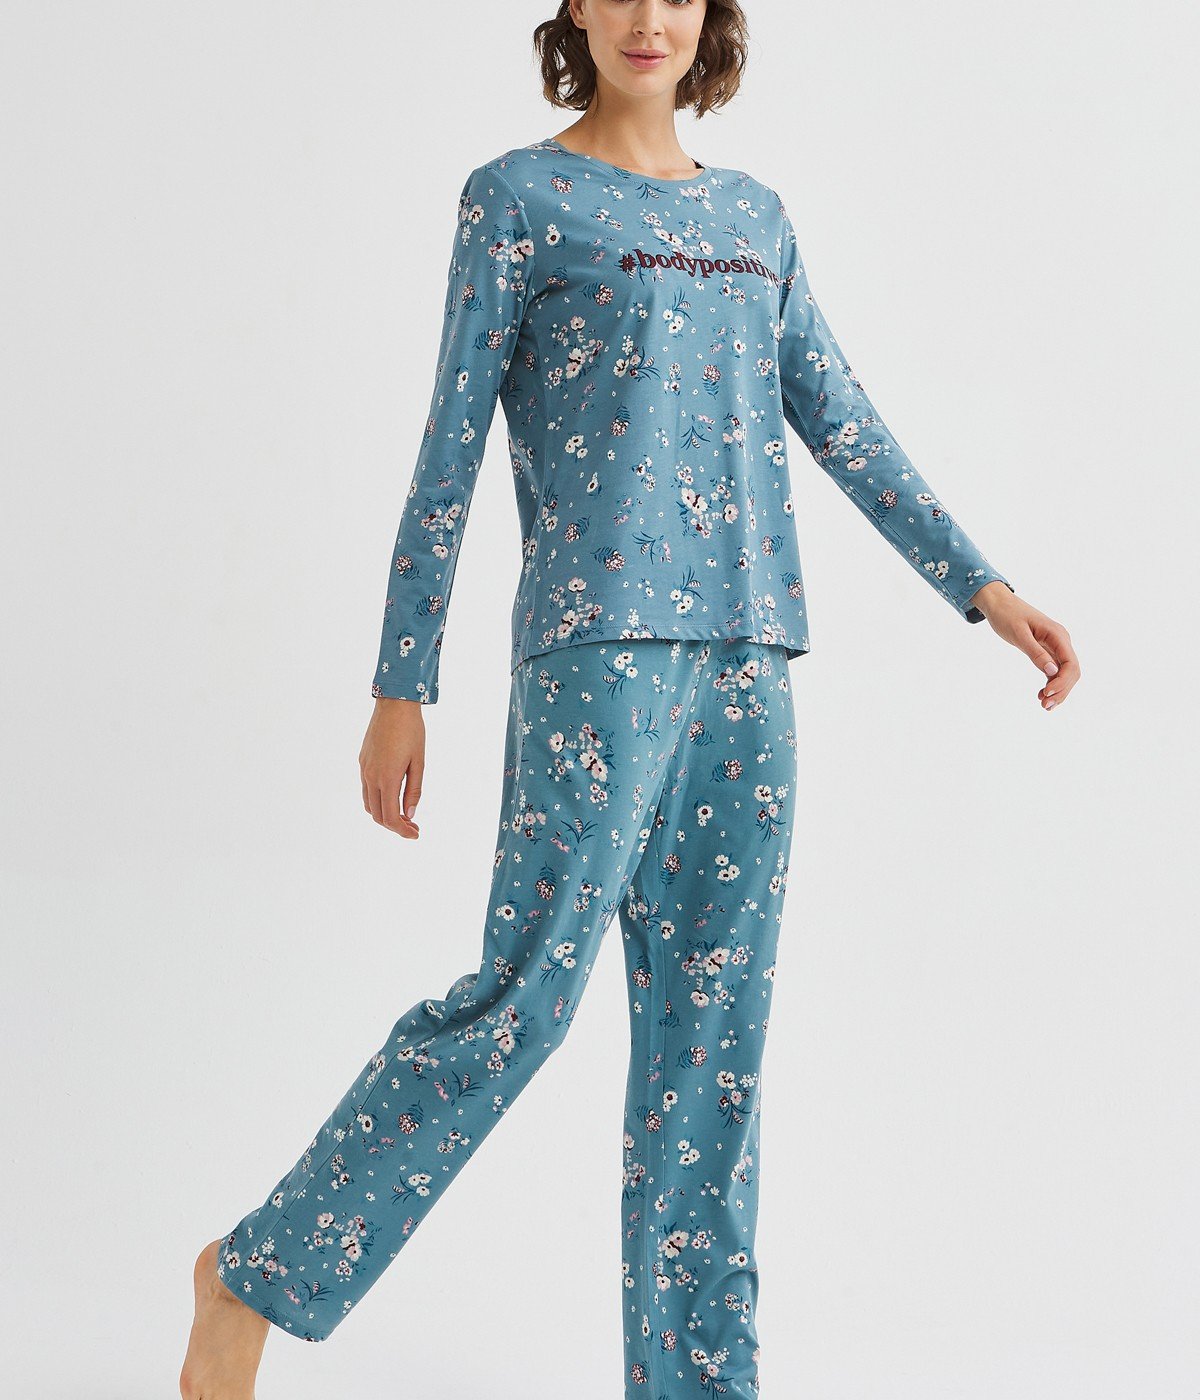 Set Pijama Bodypositive